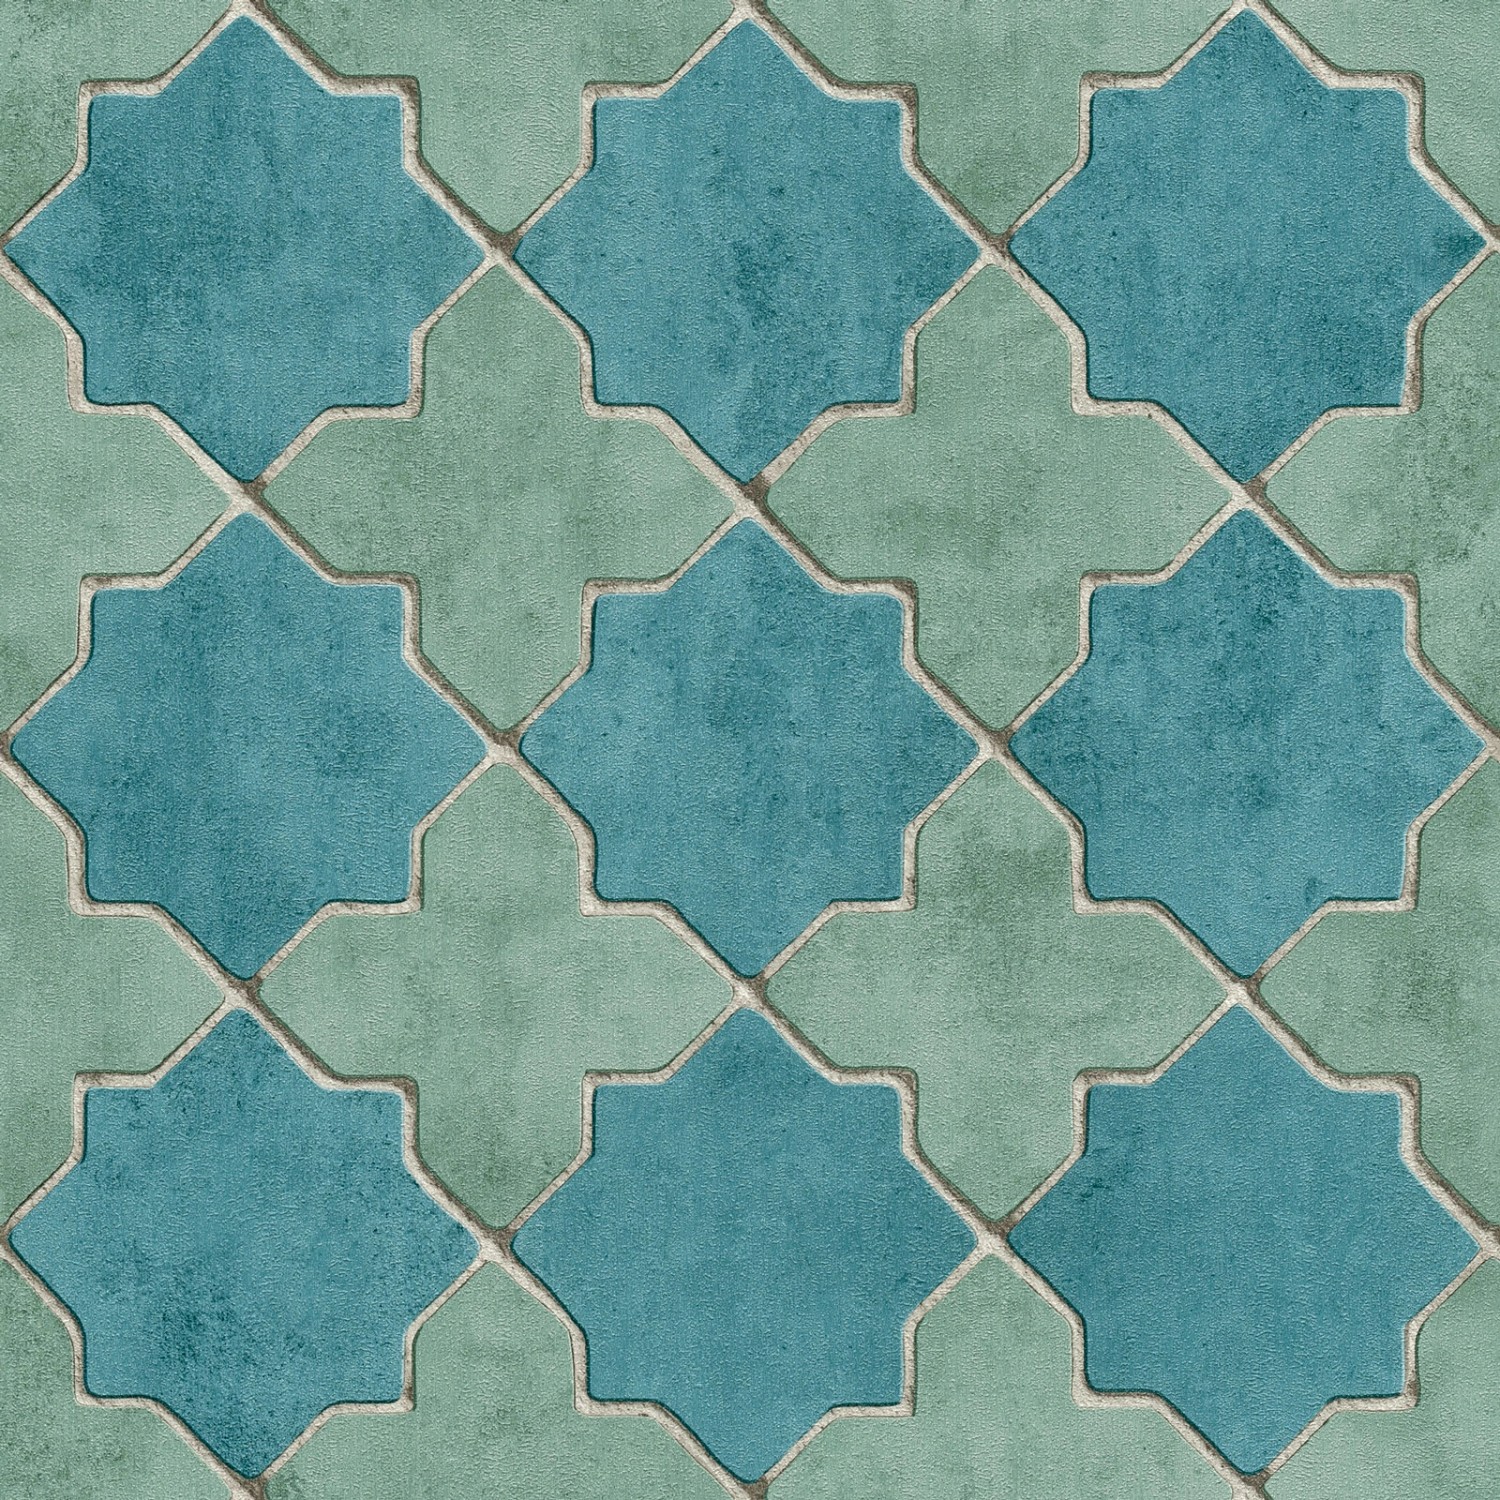 Bricoflor Fliesen Tapete Blau Türkis Orientalische Vlies Fliesentapete in Mosaik Optik Marokkanisch Arabische Vliestapete in Fliesenoptik für Küche von Bricoflor